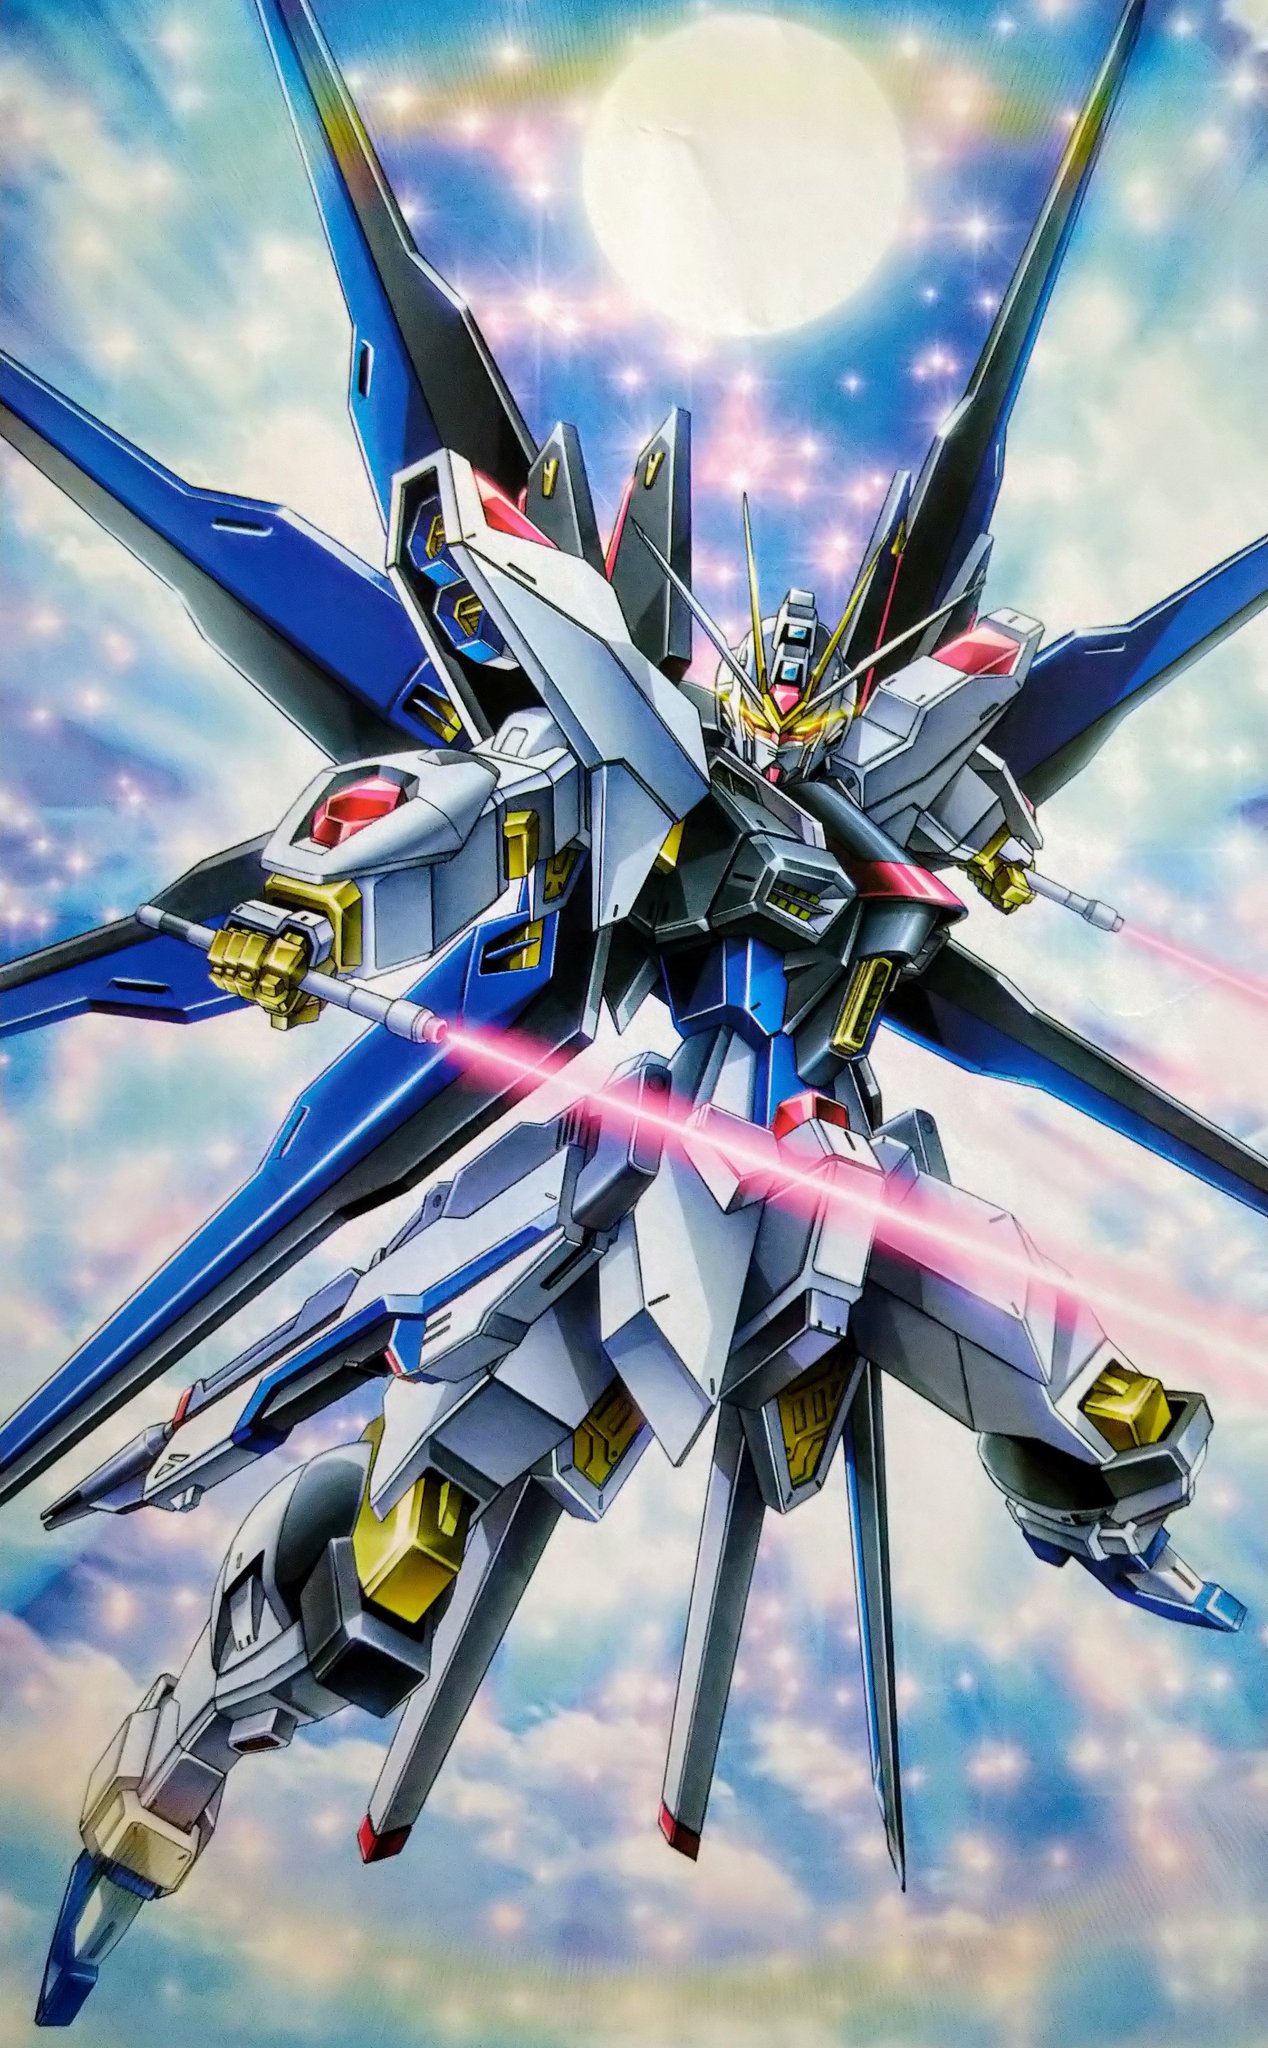 Artwork Digital Art Fan Art Super Robot Wars Anime Mech Gundam Mobile Suit Gundam SEED Destiny Strik 1268x2048